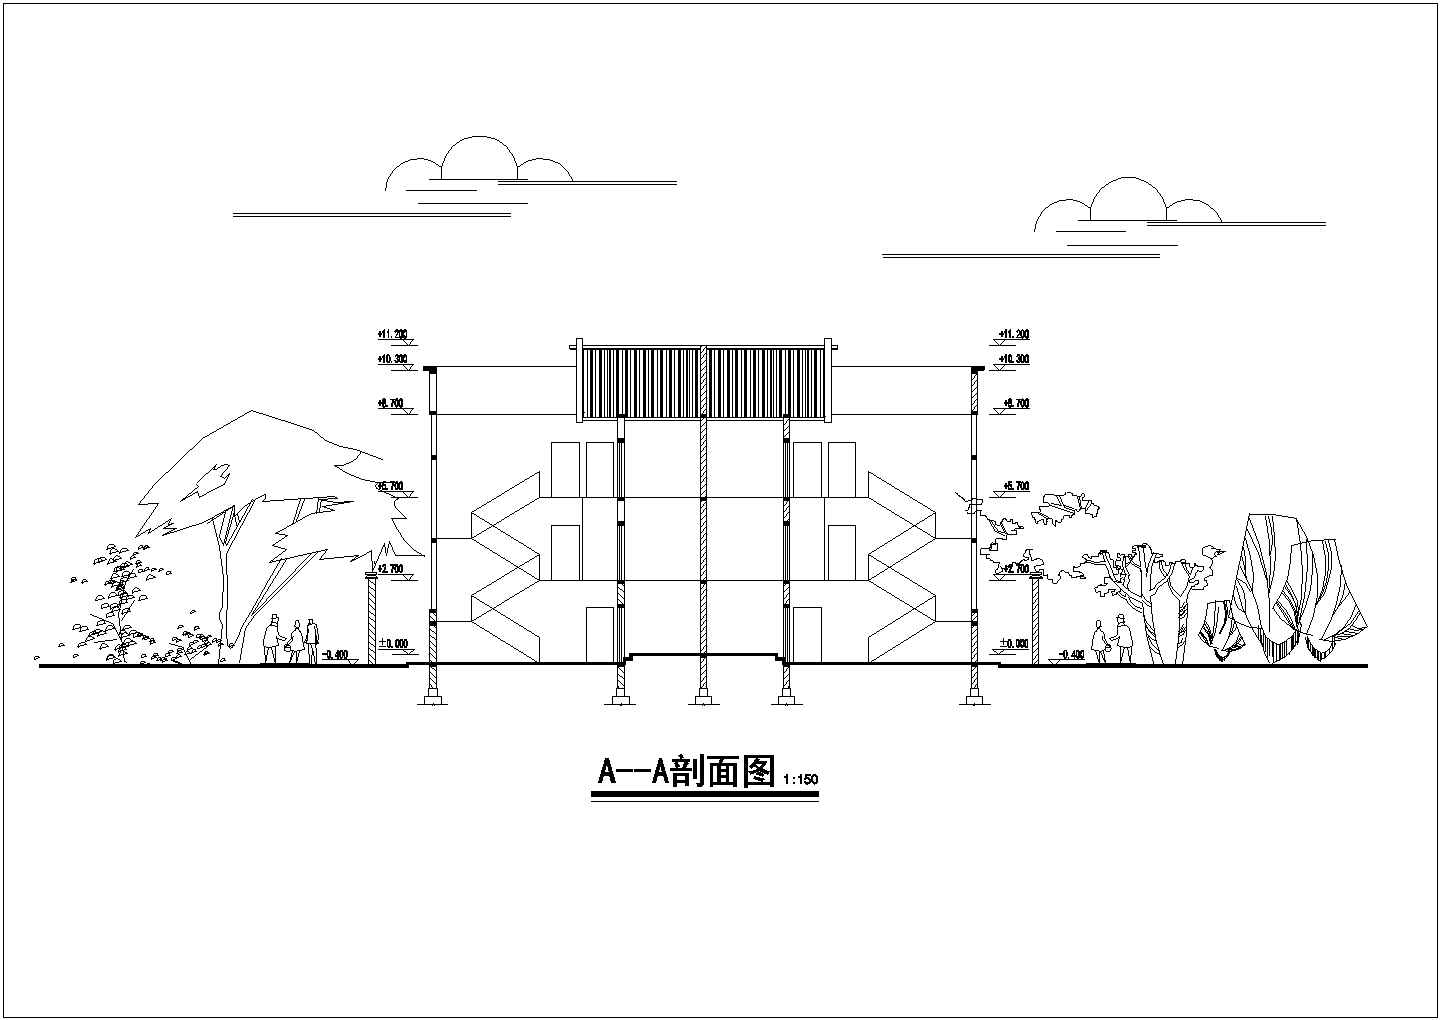 川南某处民居住宅楼建筑方案设计图